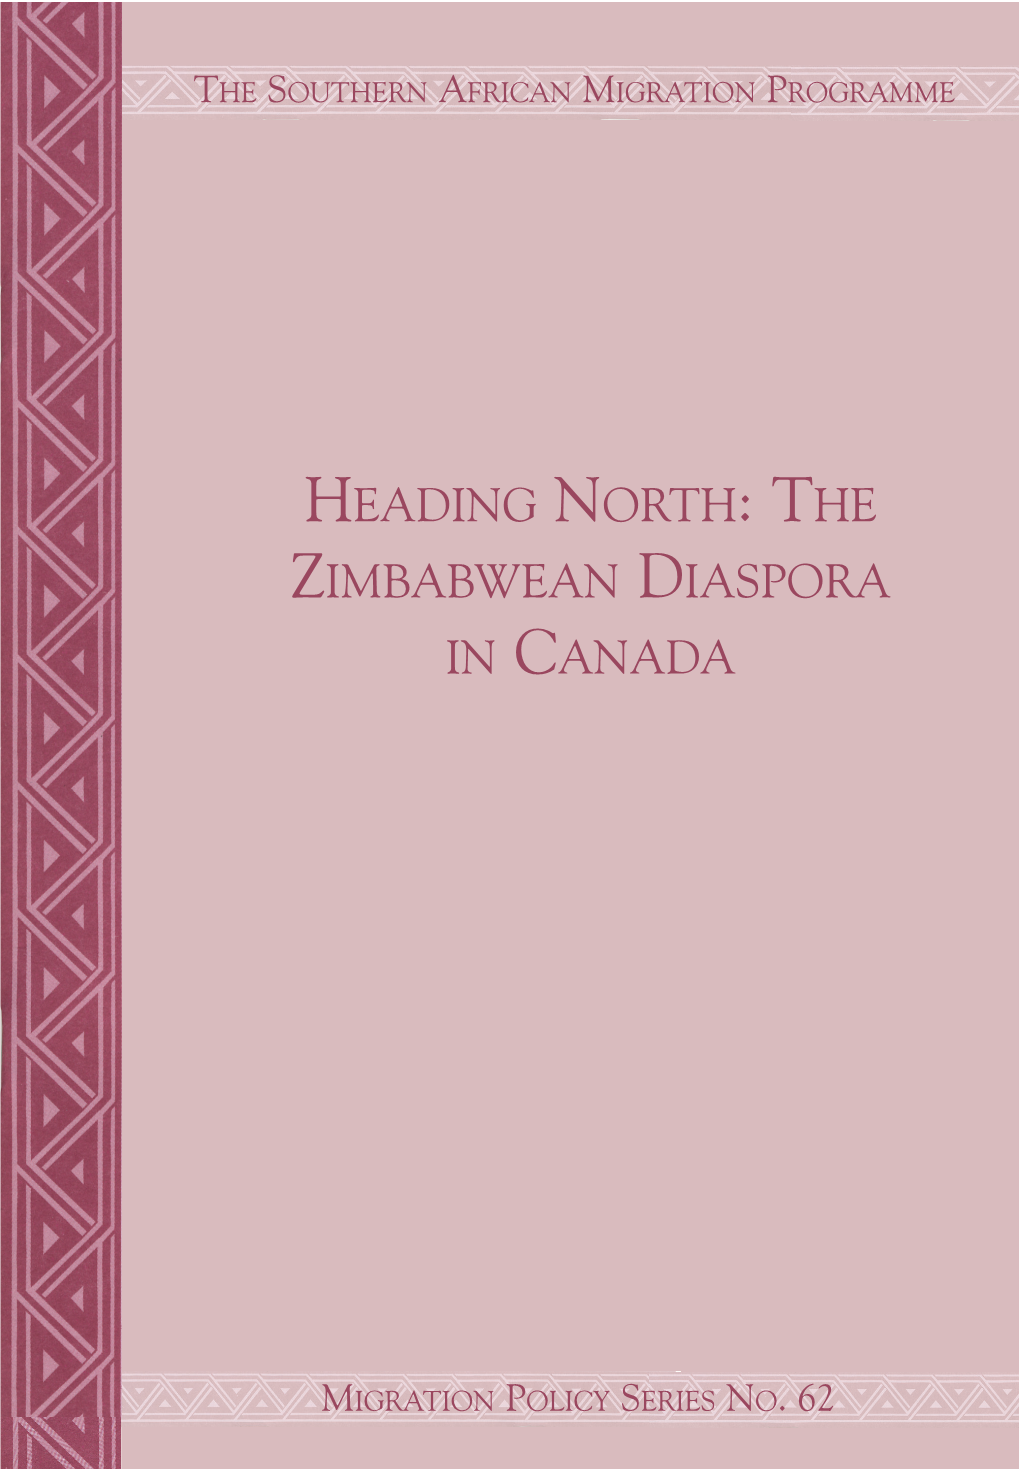 The Zimbabwean Diaspora in Canada